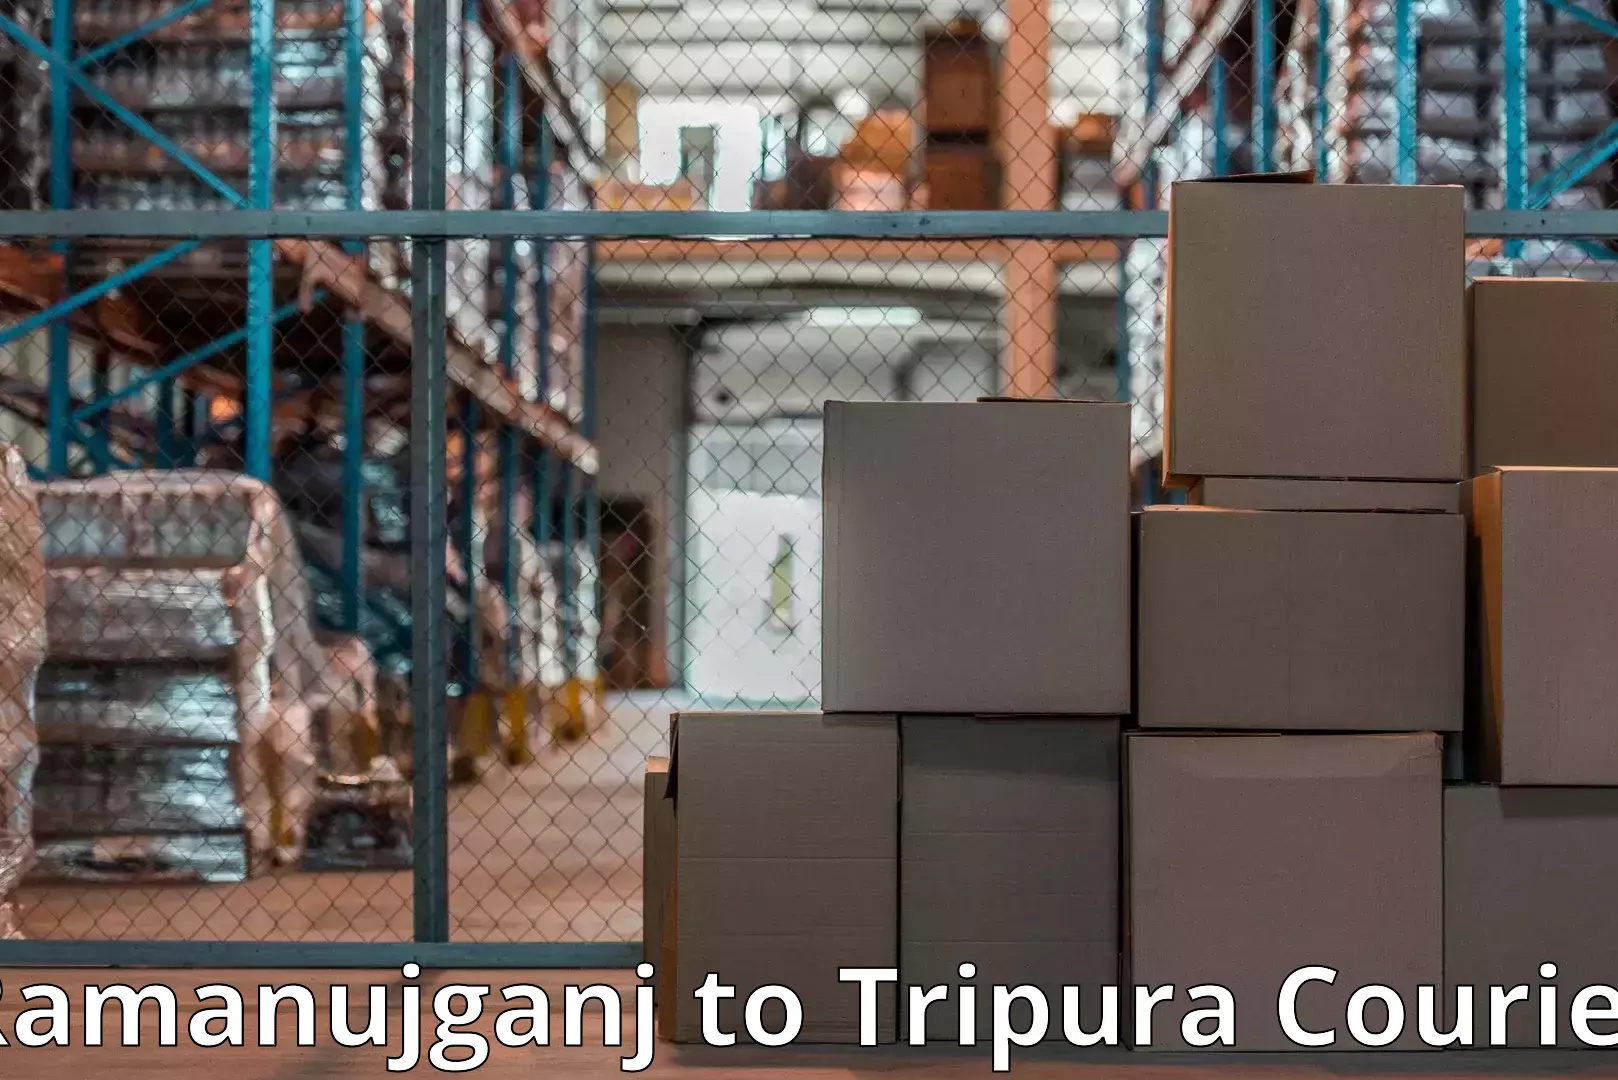 Furniture moving and handling Ramanujganj to Udaipur Tripura